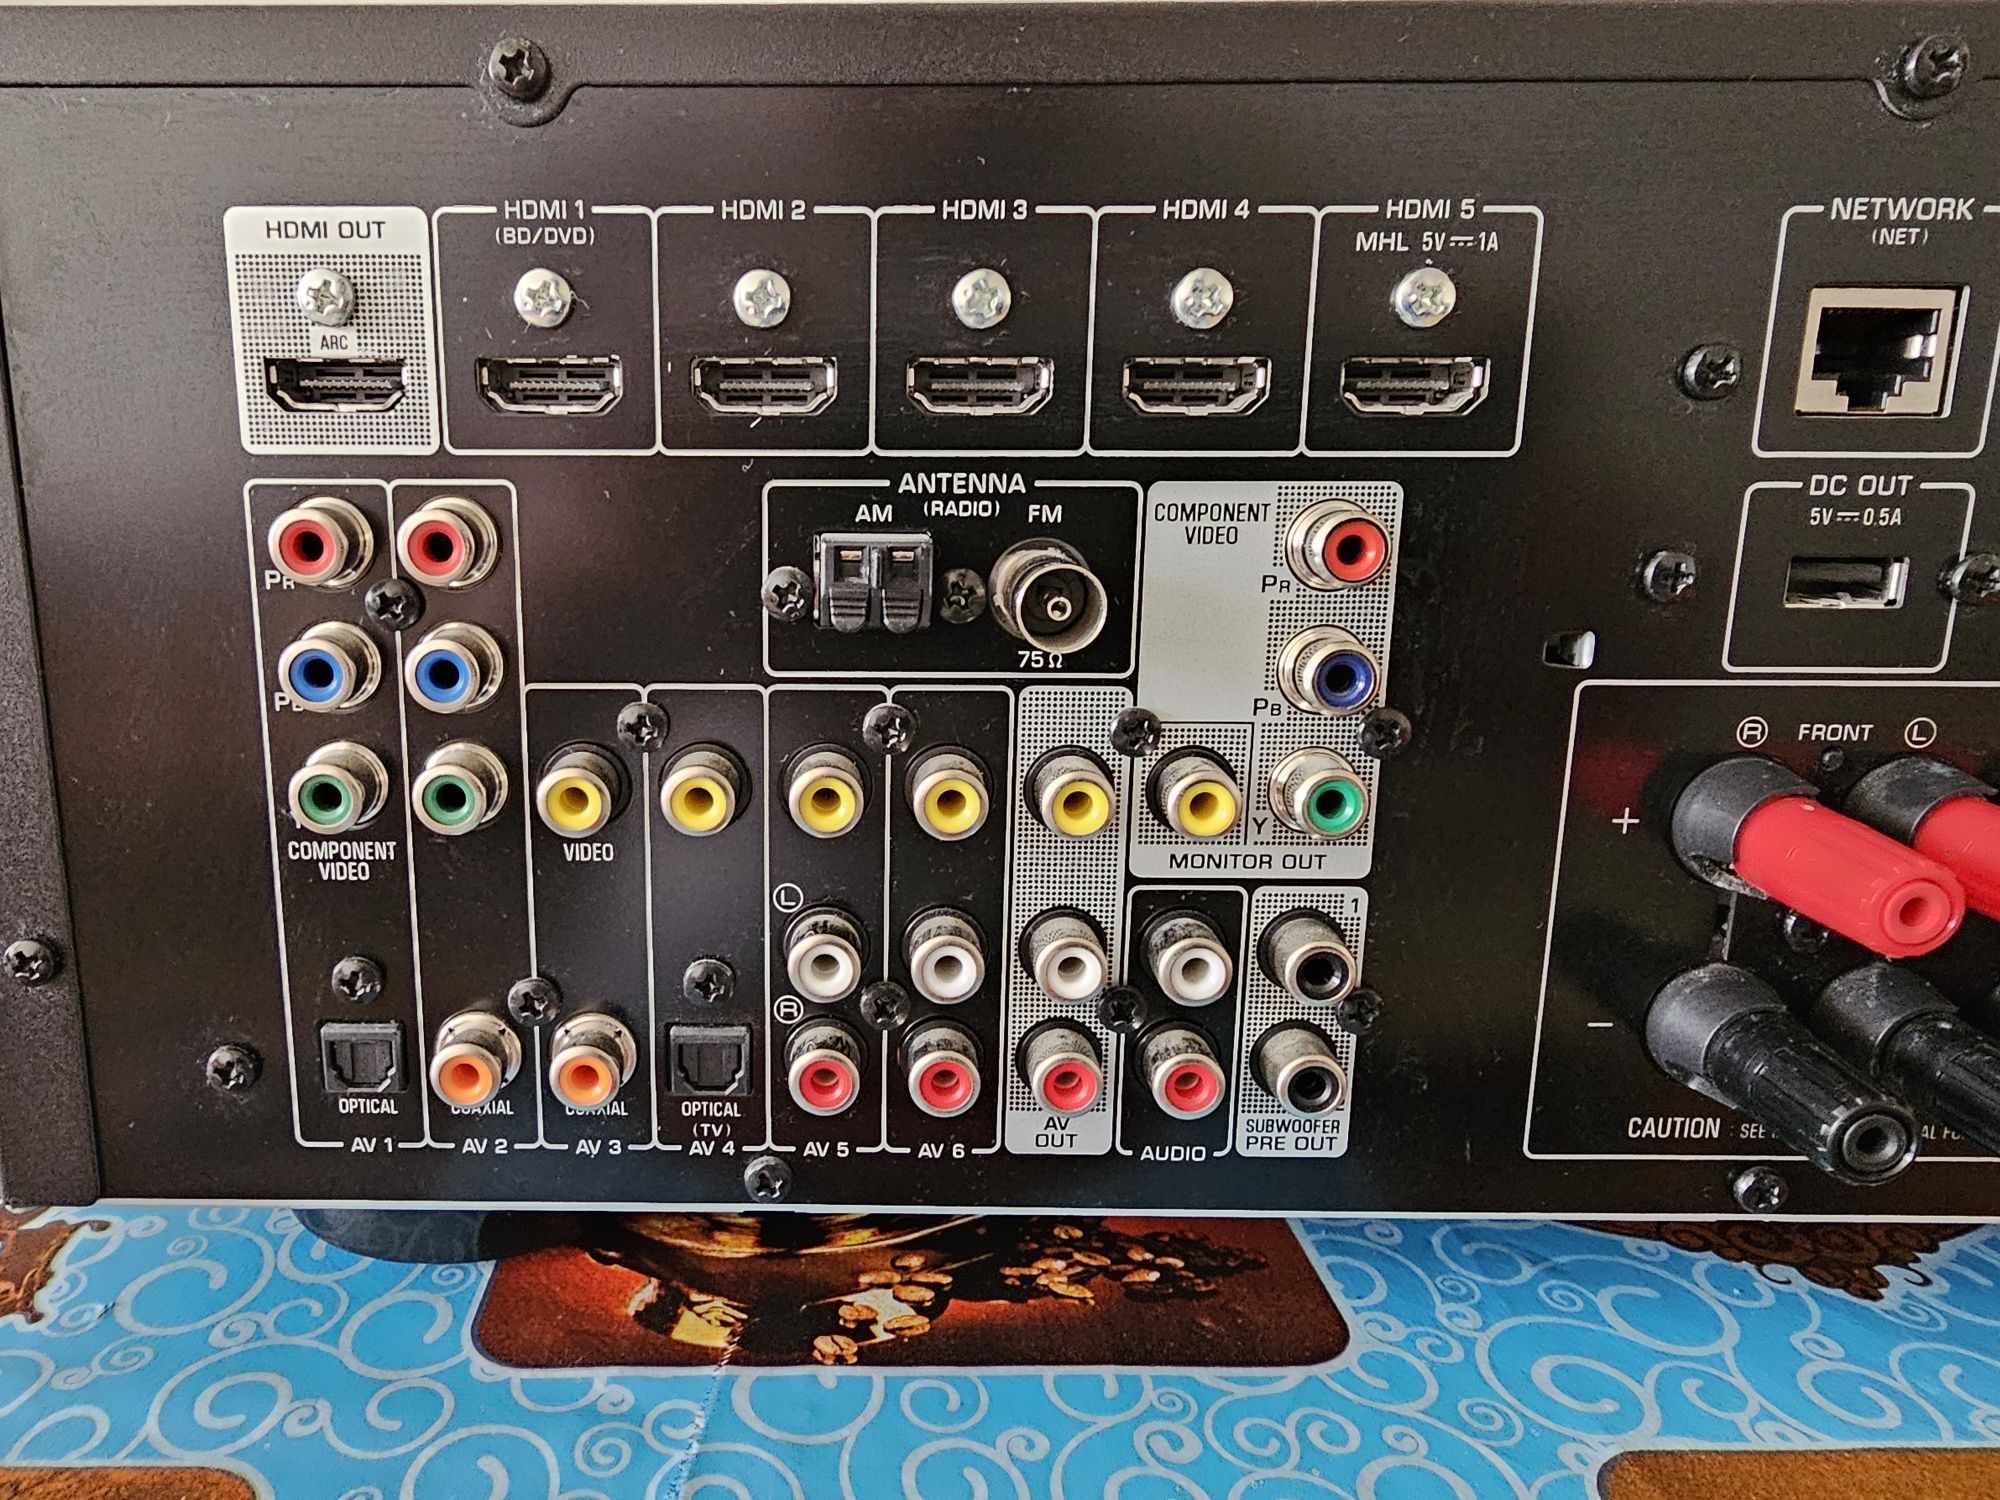 Sieciowy amplituner kina domowego Yamaha RX-V575 (7.2) jak nowy